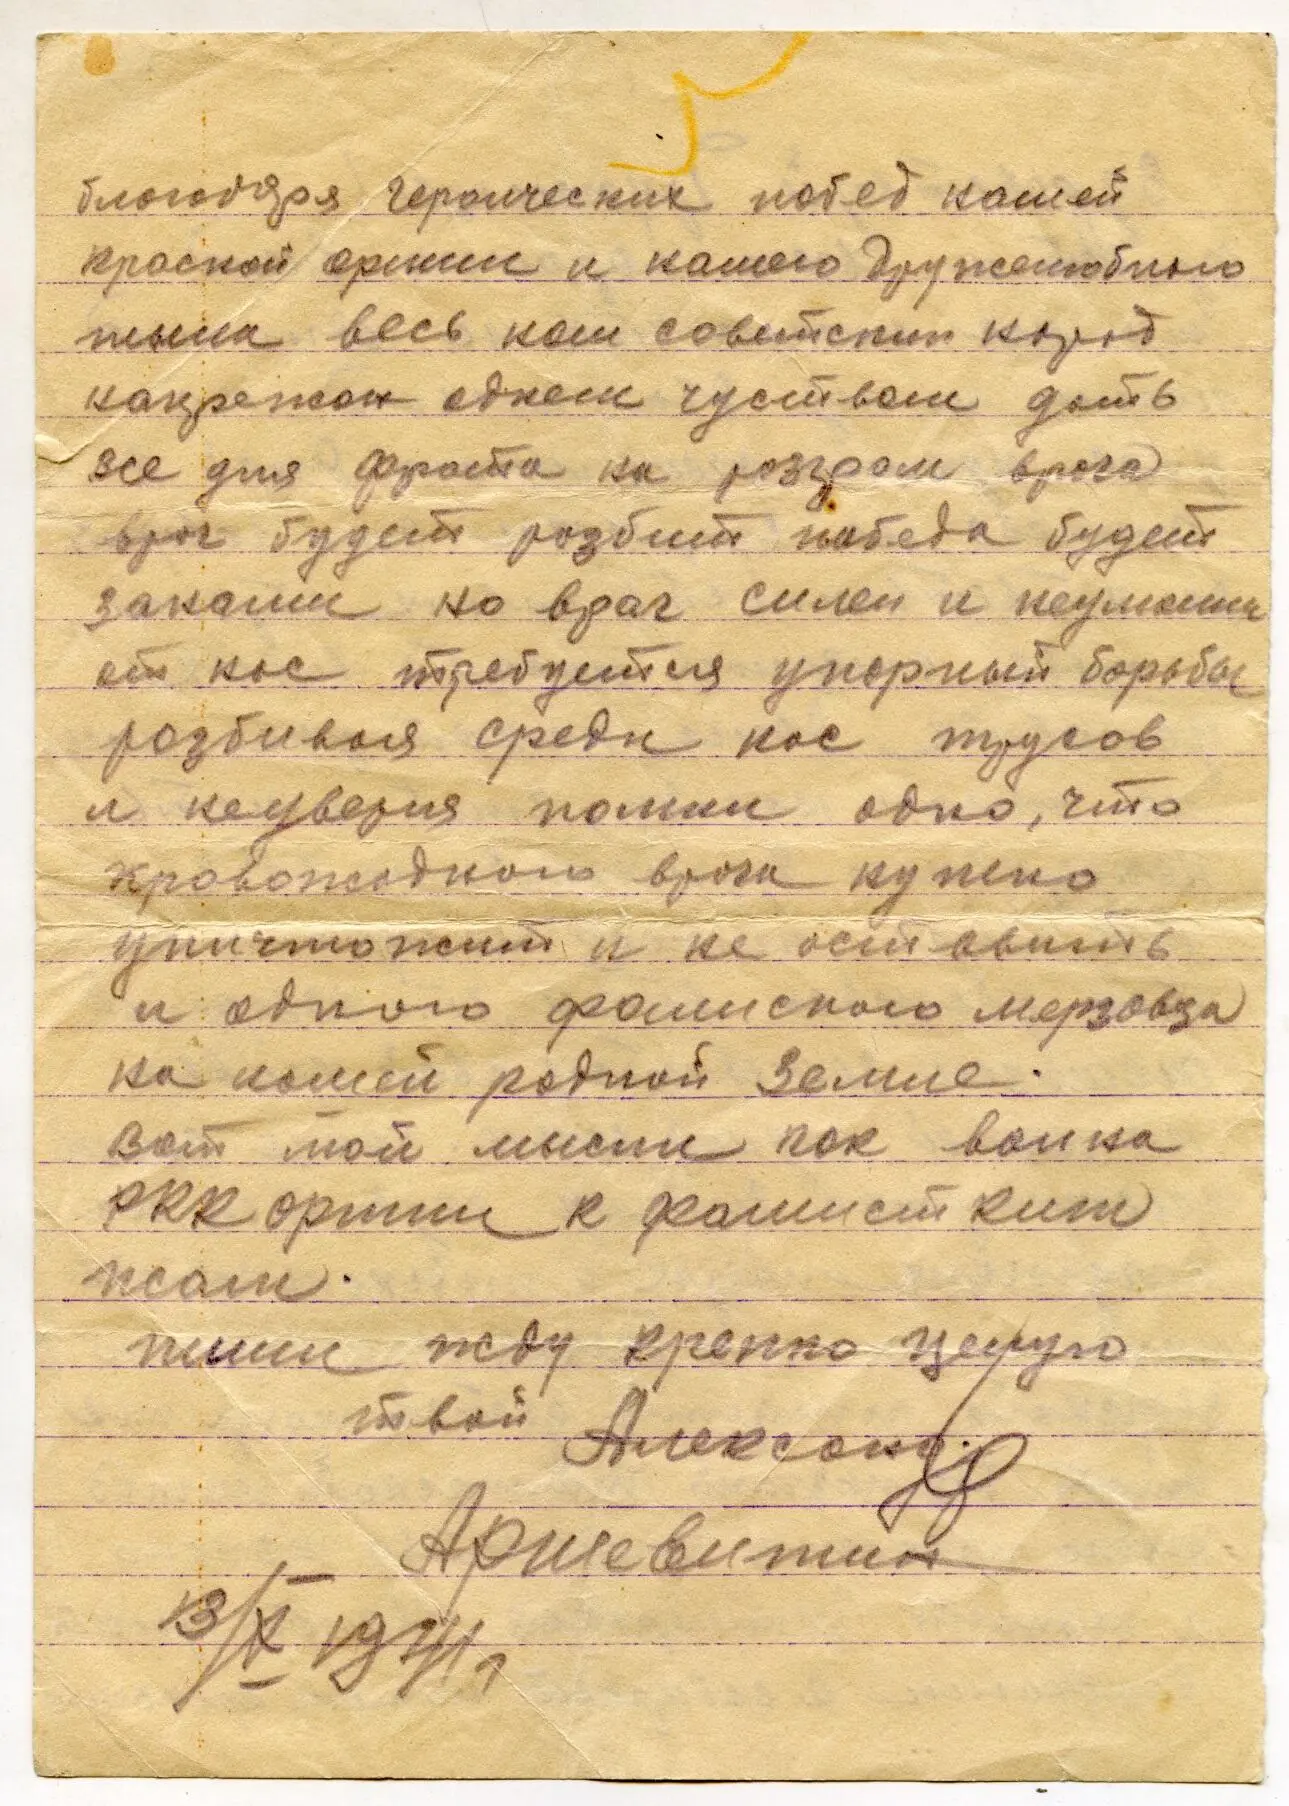 19420205 Дата отправления письма 5 февраля 1941 г Отправитель - фото 3